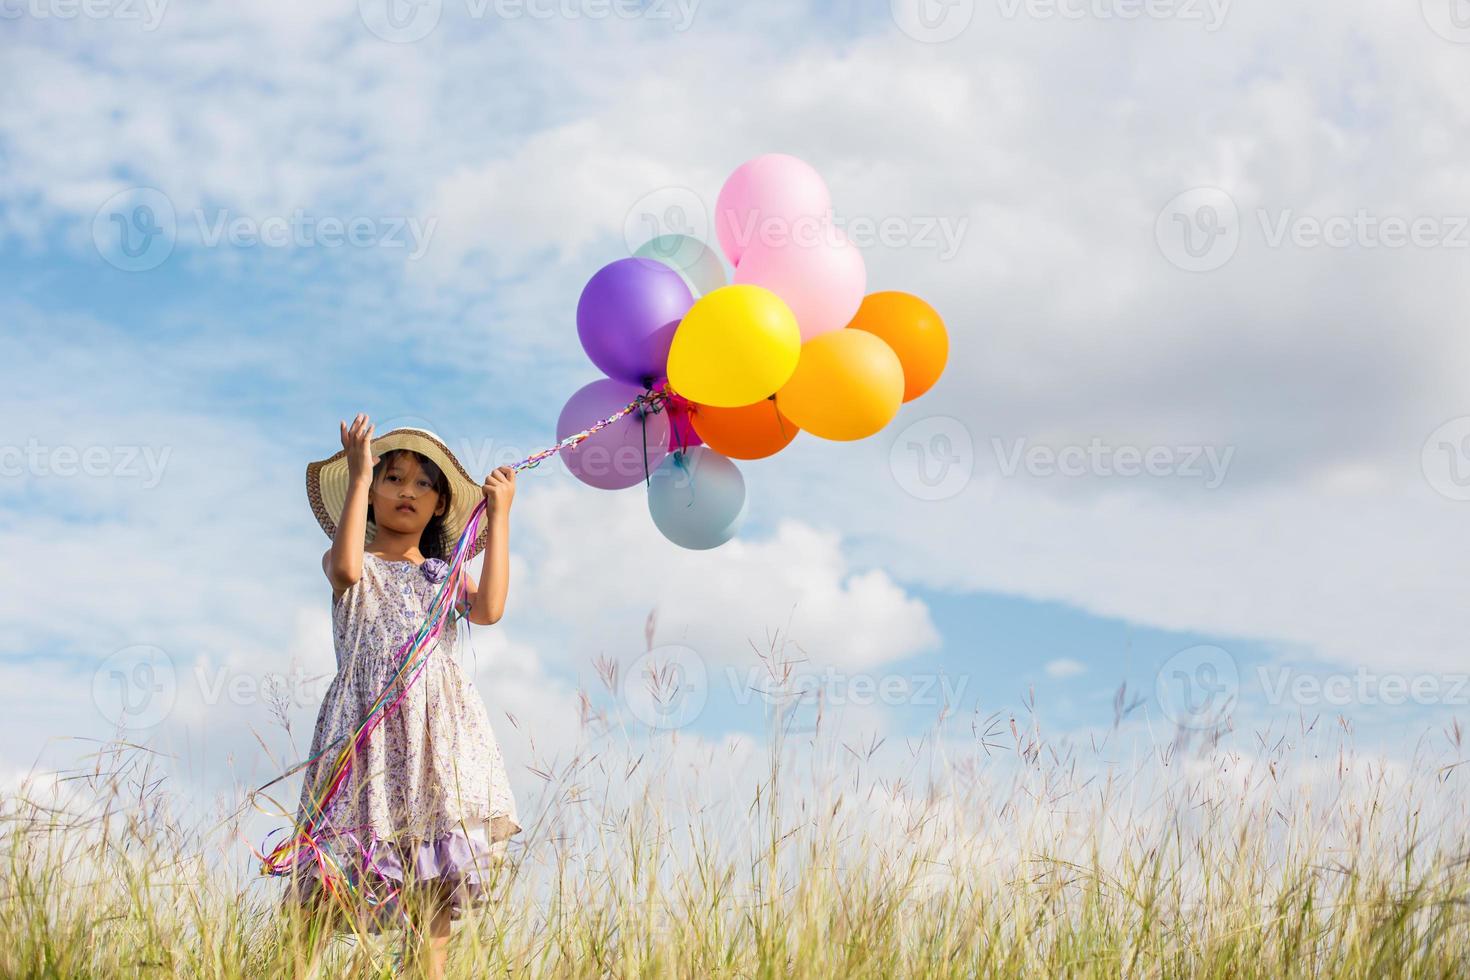 süßes kleines mädchen, das bunte luftballons auf der wiese gegen blauen himmel und wolken hält und die hände ausbreitet. foto